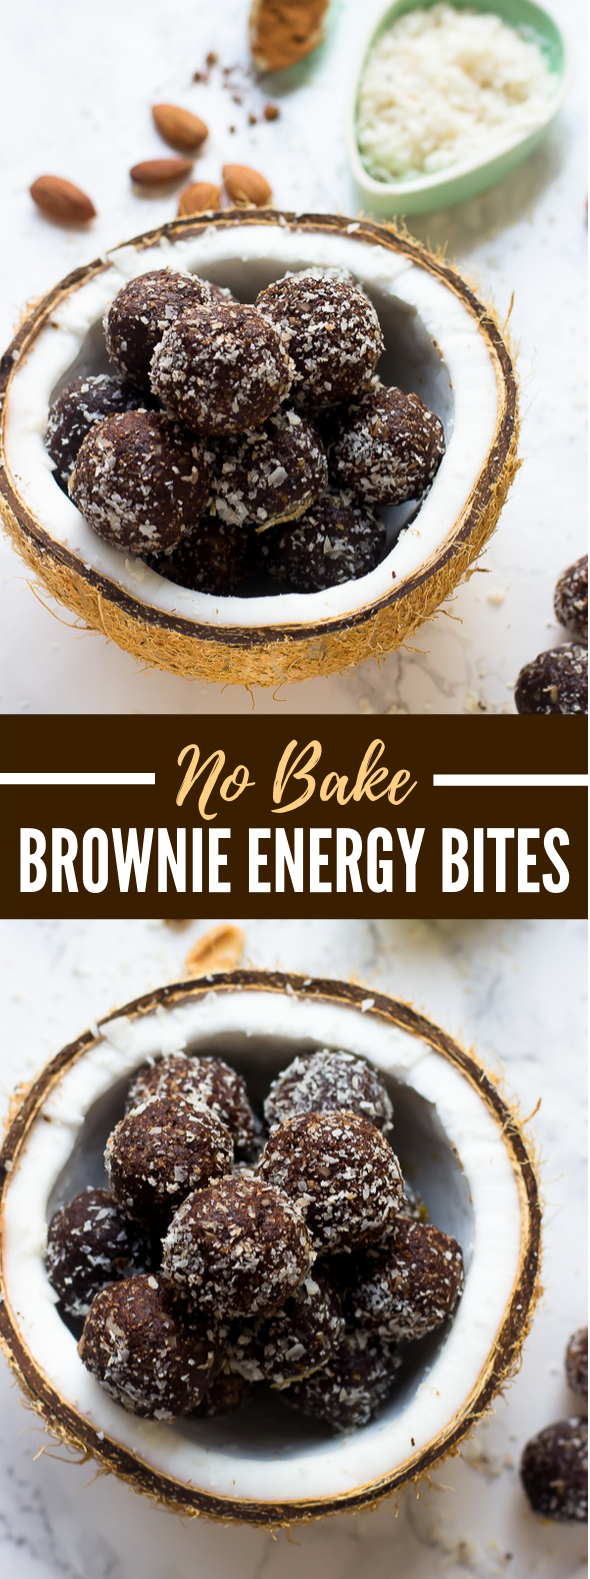 No Bake Brownie Energy Bites #healthy #breakfast